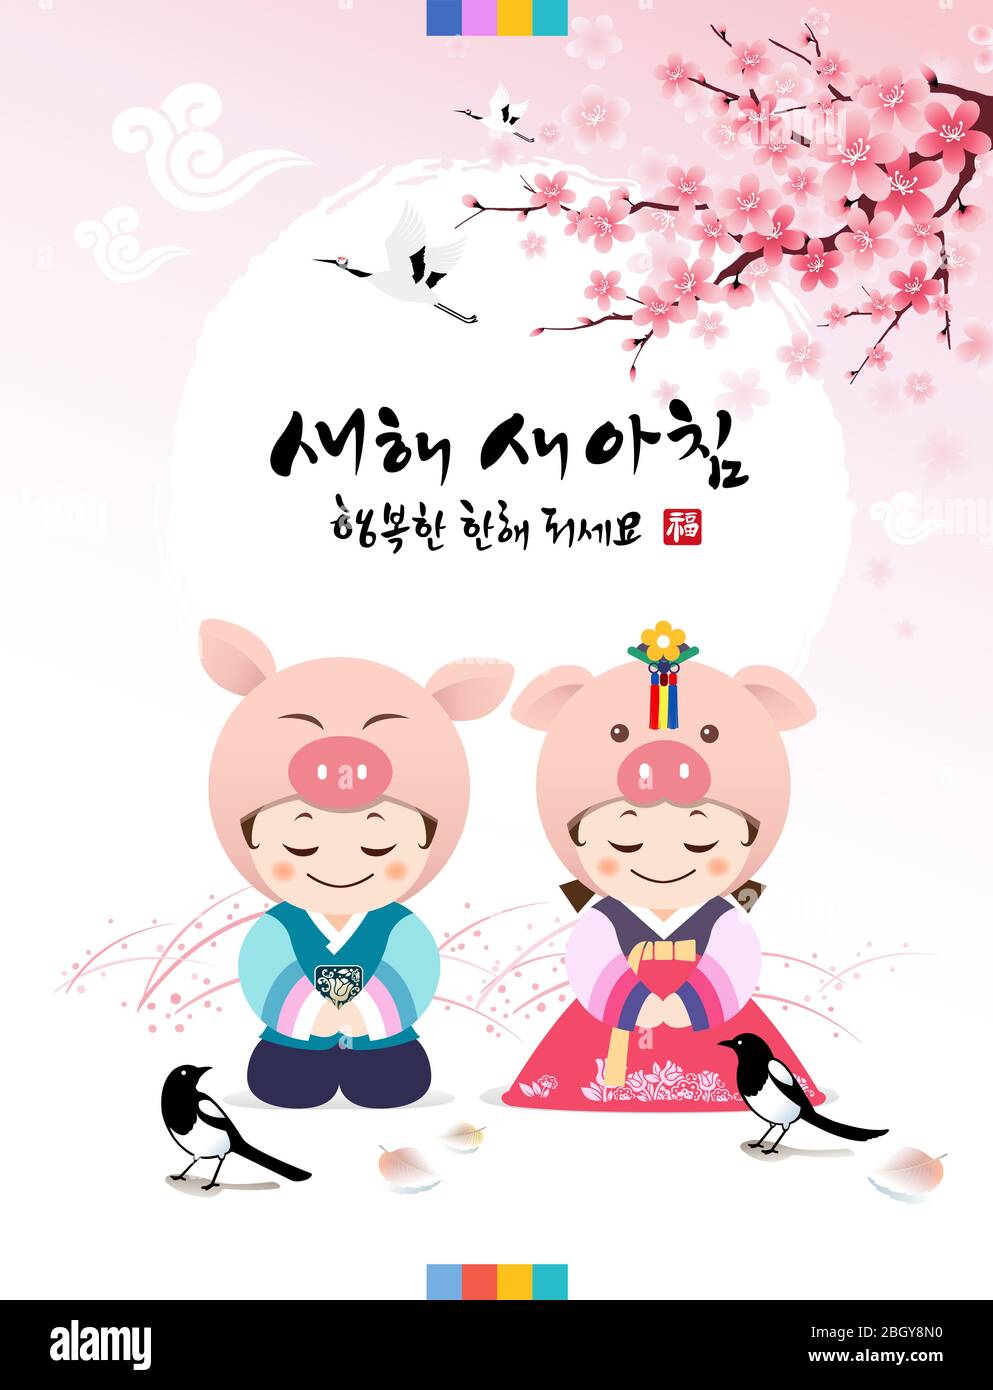 Frohes neues Jahr, Übersetzung des Koreanischen Textes: Frohes neues Jahr Kalligraphie und koreanische traditionelle Kinder begrüßen. Stock Vektor